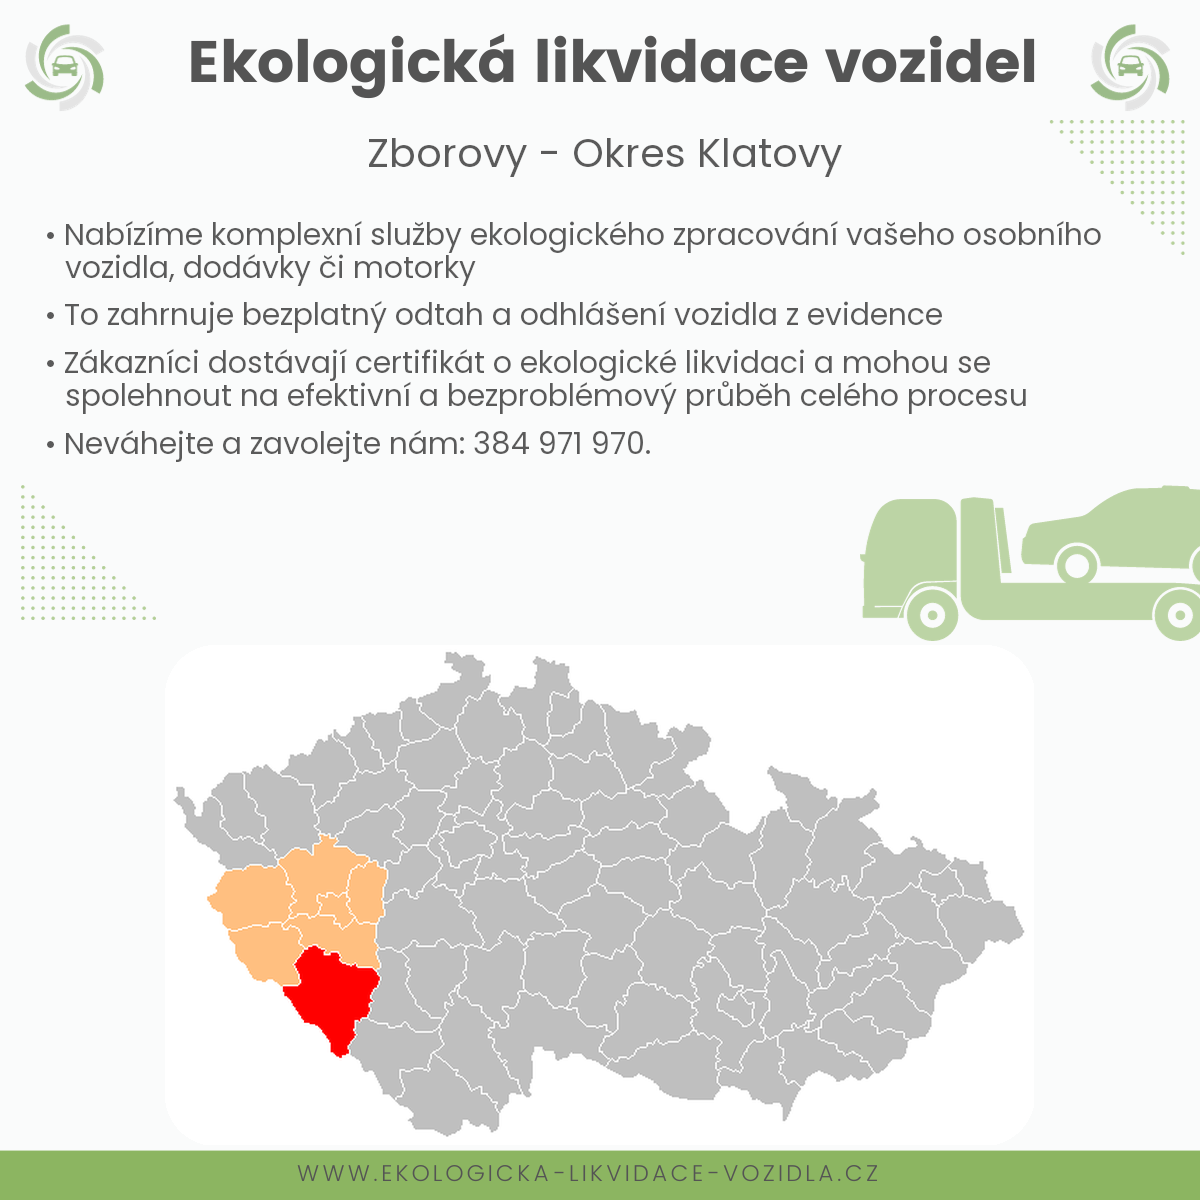 likvidace vozidel - Zborovy